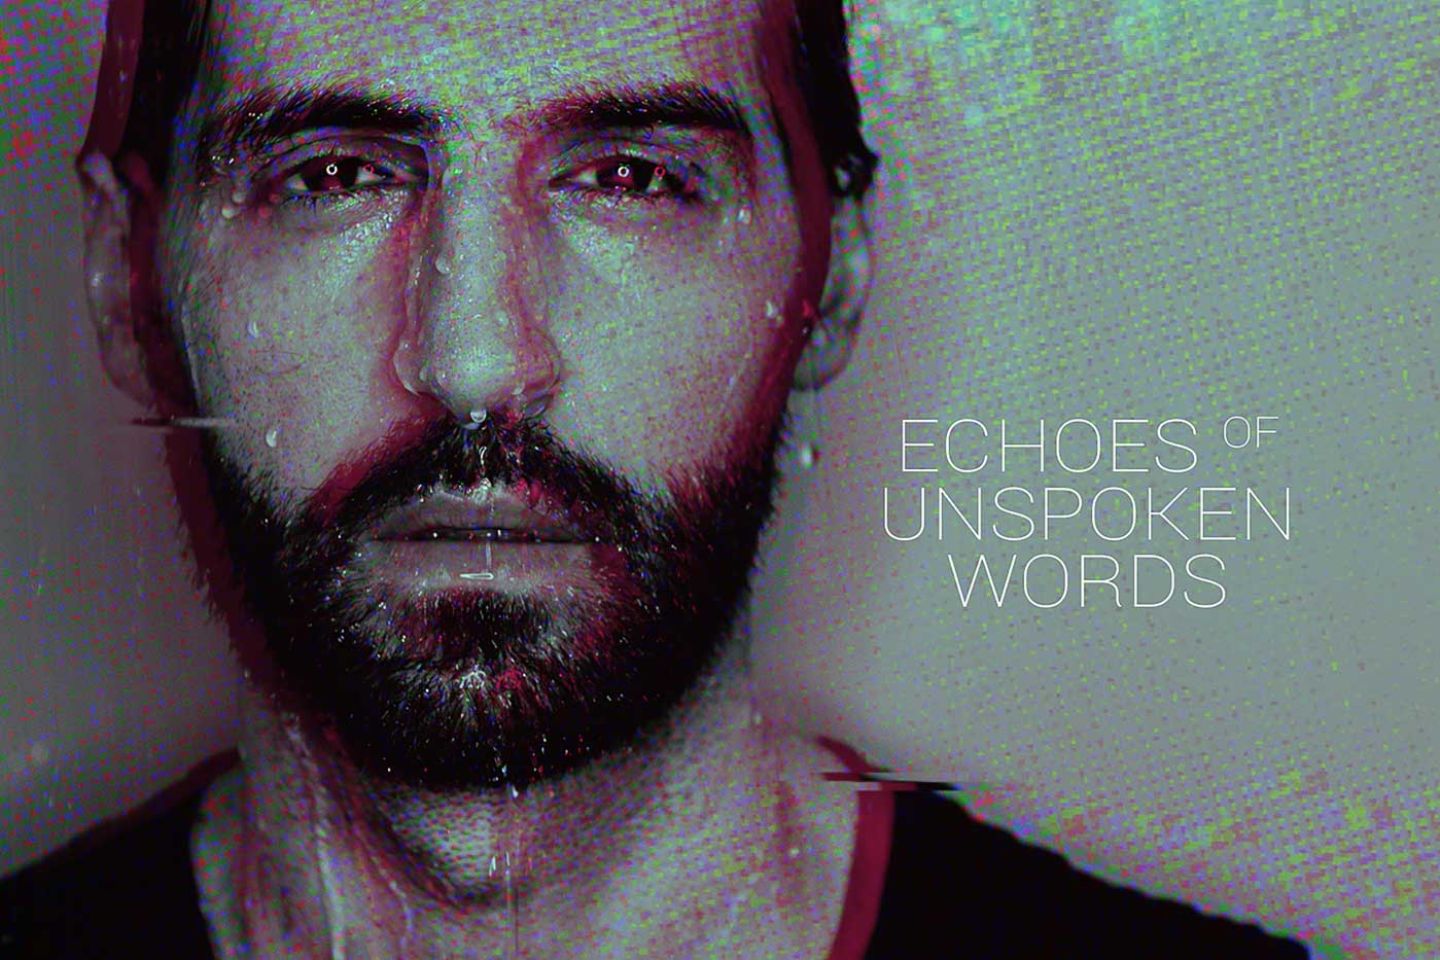 An Early Bird “Echoes of Unspoken Words” (Artist First, 2020)